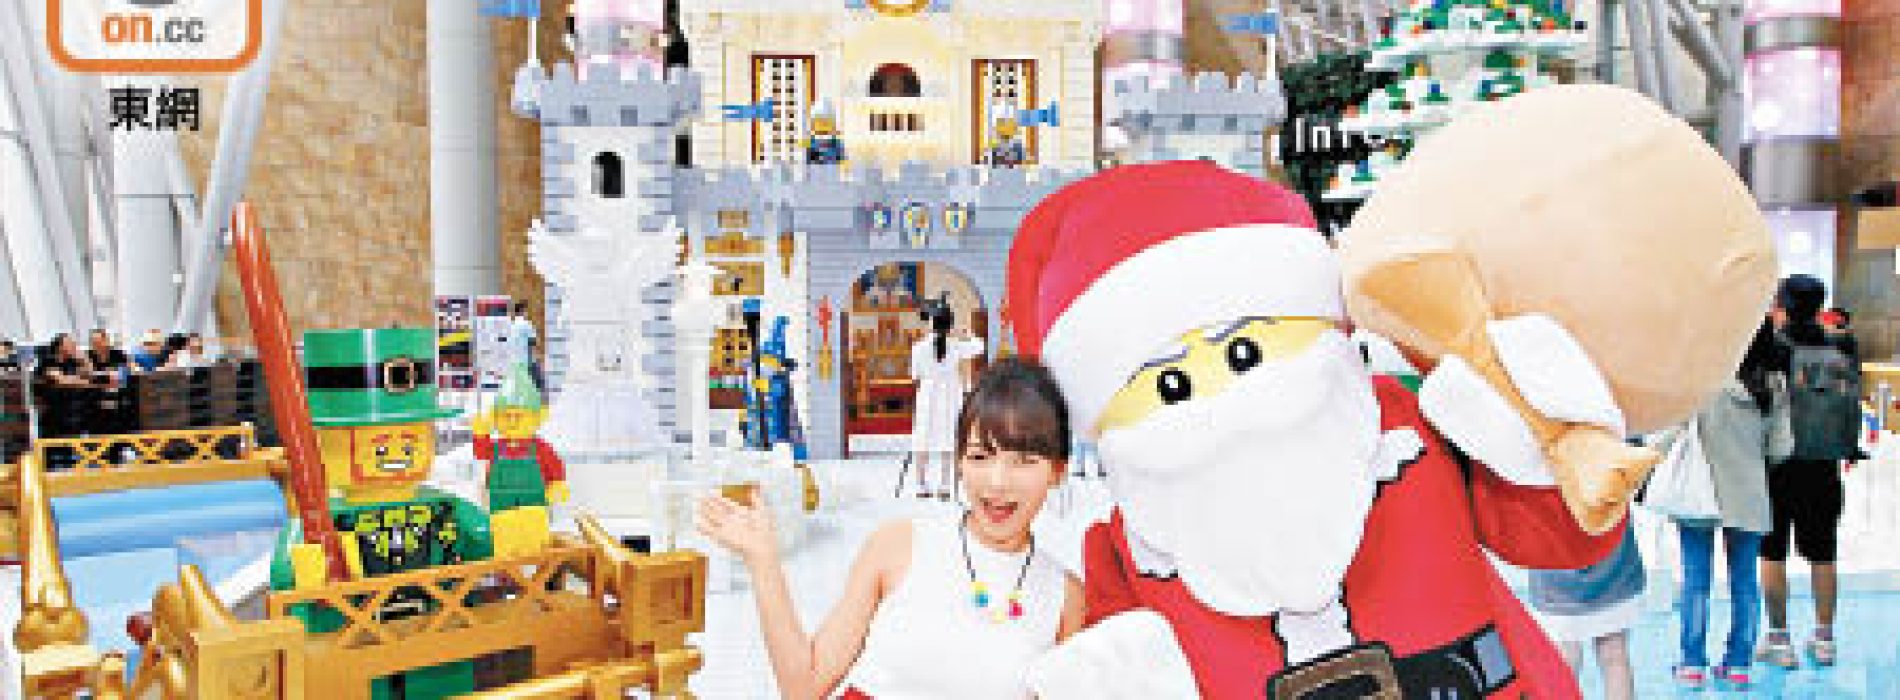 旺角LEGO城堡 「百萬」砌出白色聖誕